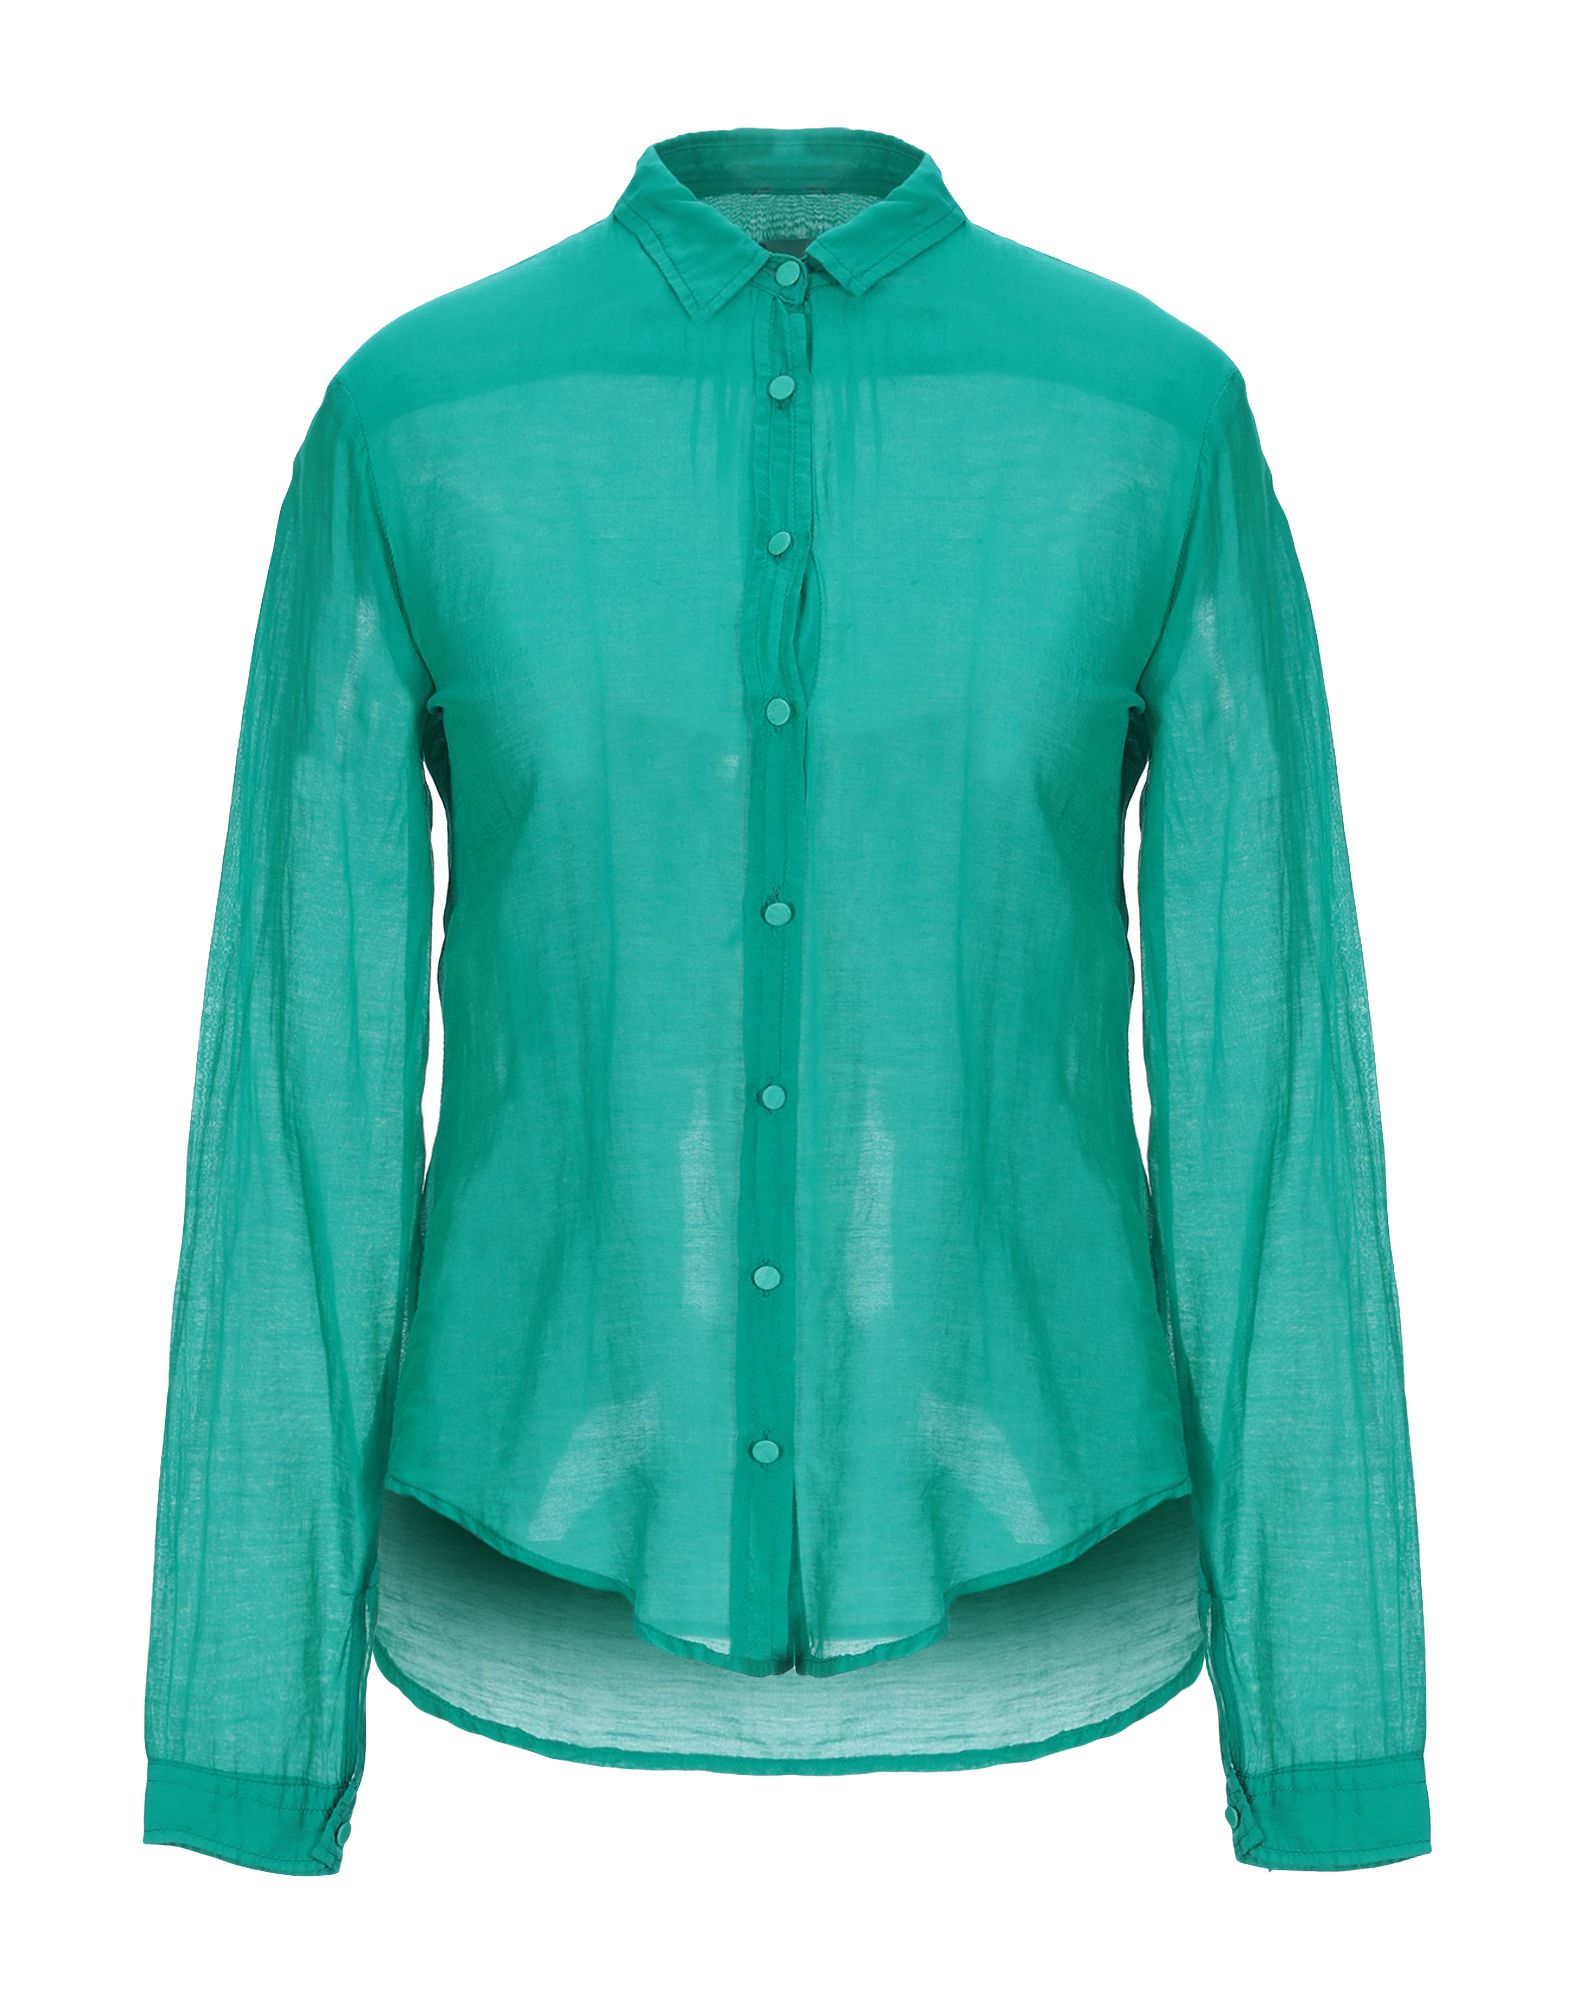 《送料無料》,MERCI レディース シャツ グリーン S 紡績繊維